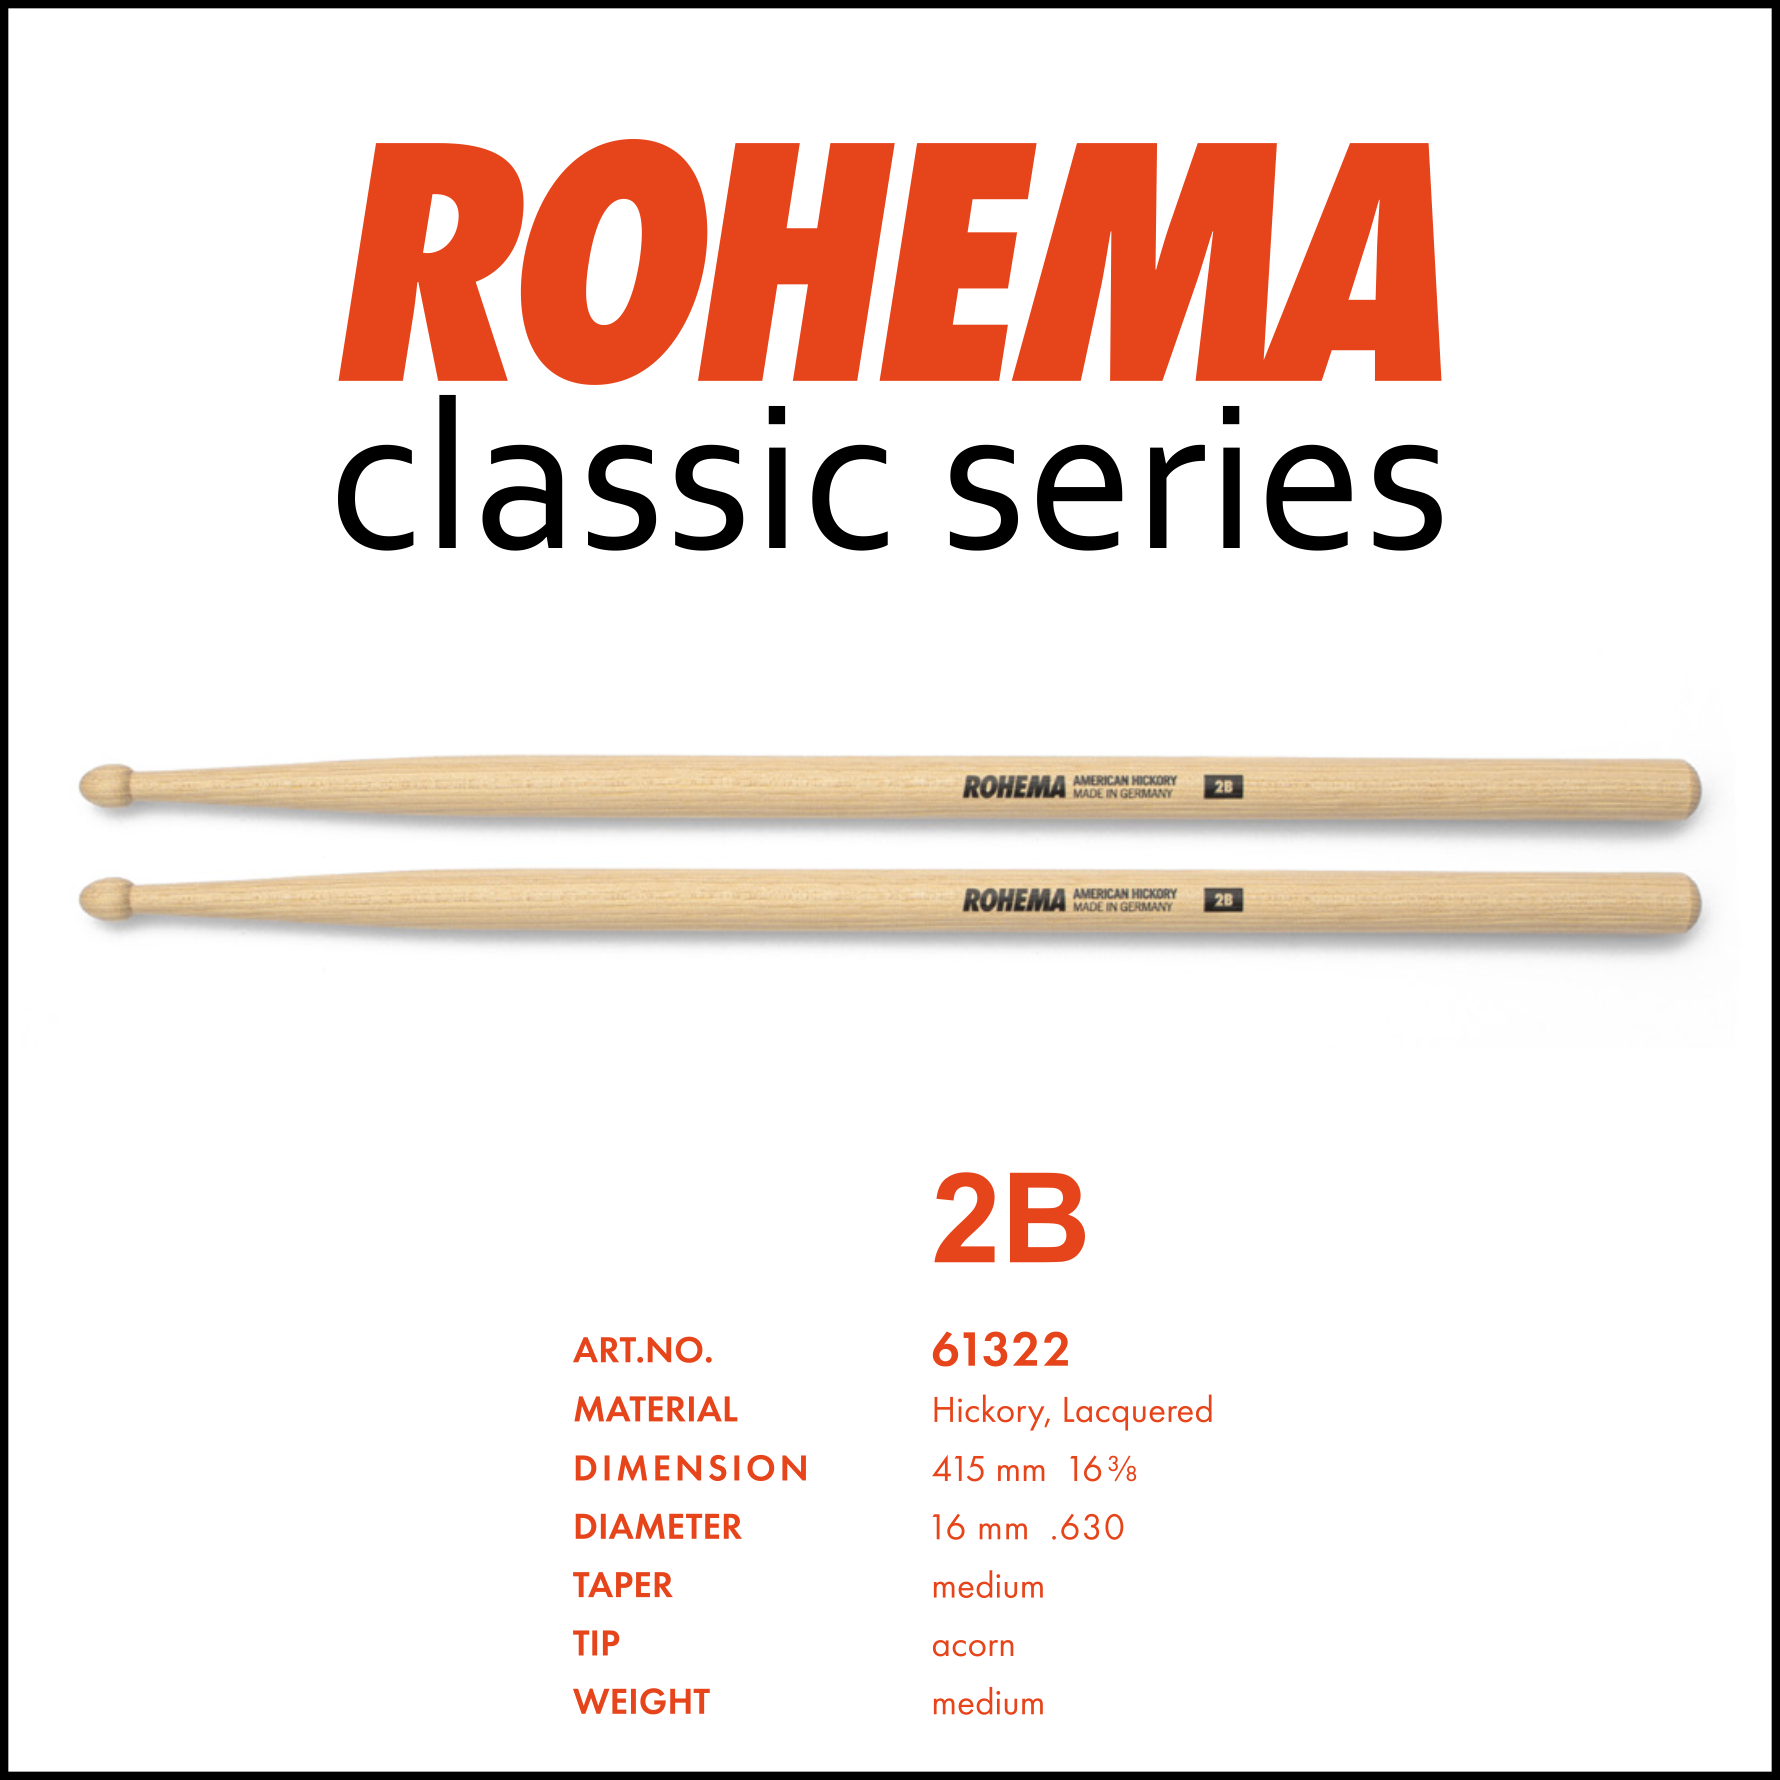 Rohema Classic Series 2B: Professionele, stevige, duurzame en vriendelijke geprijsde drumstokken.